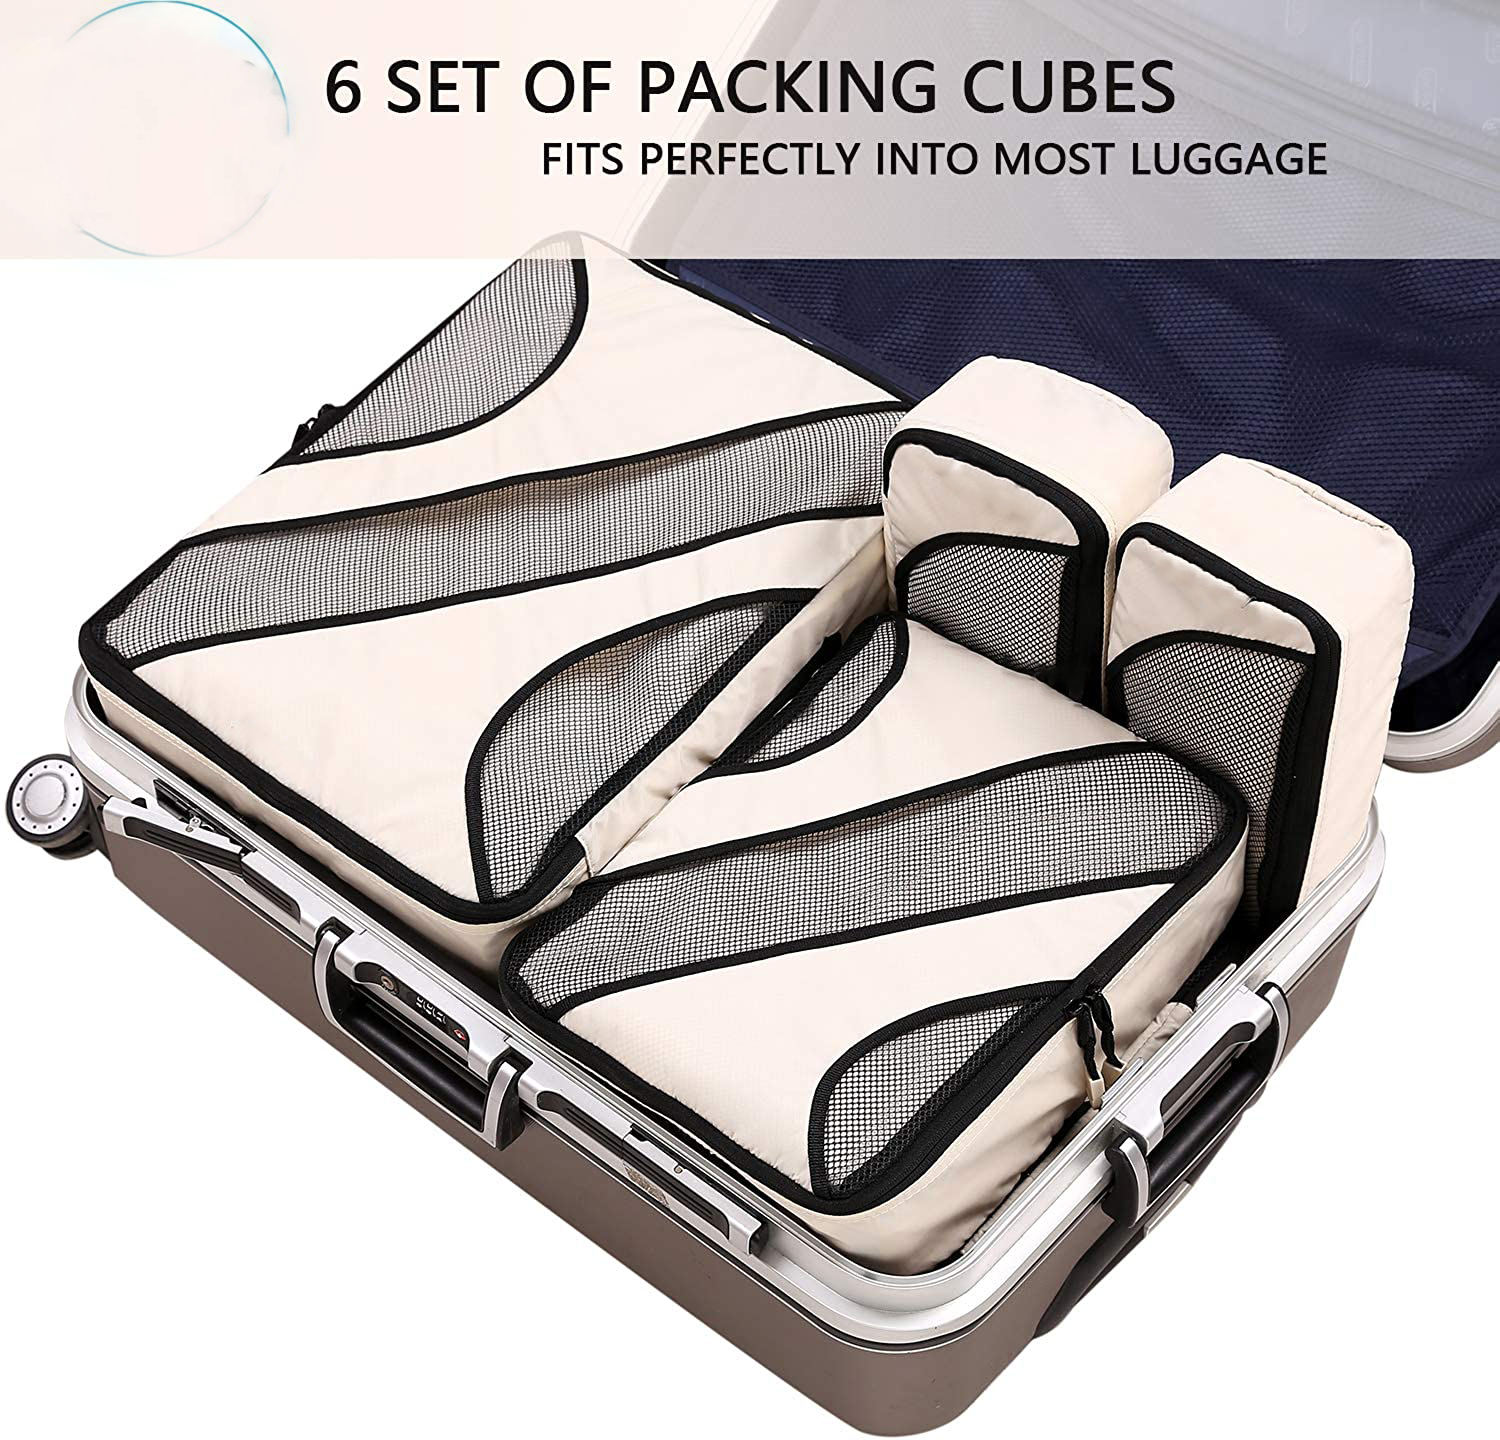 6 ensembles d'emballage Cubes 3 différentes tailles voyage bagages organisateurs d'emballage sac voyage sac organisateur pour vêtements chaussures